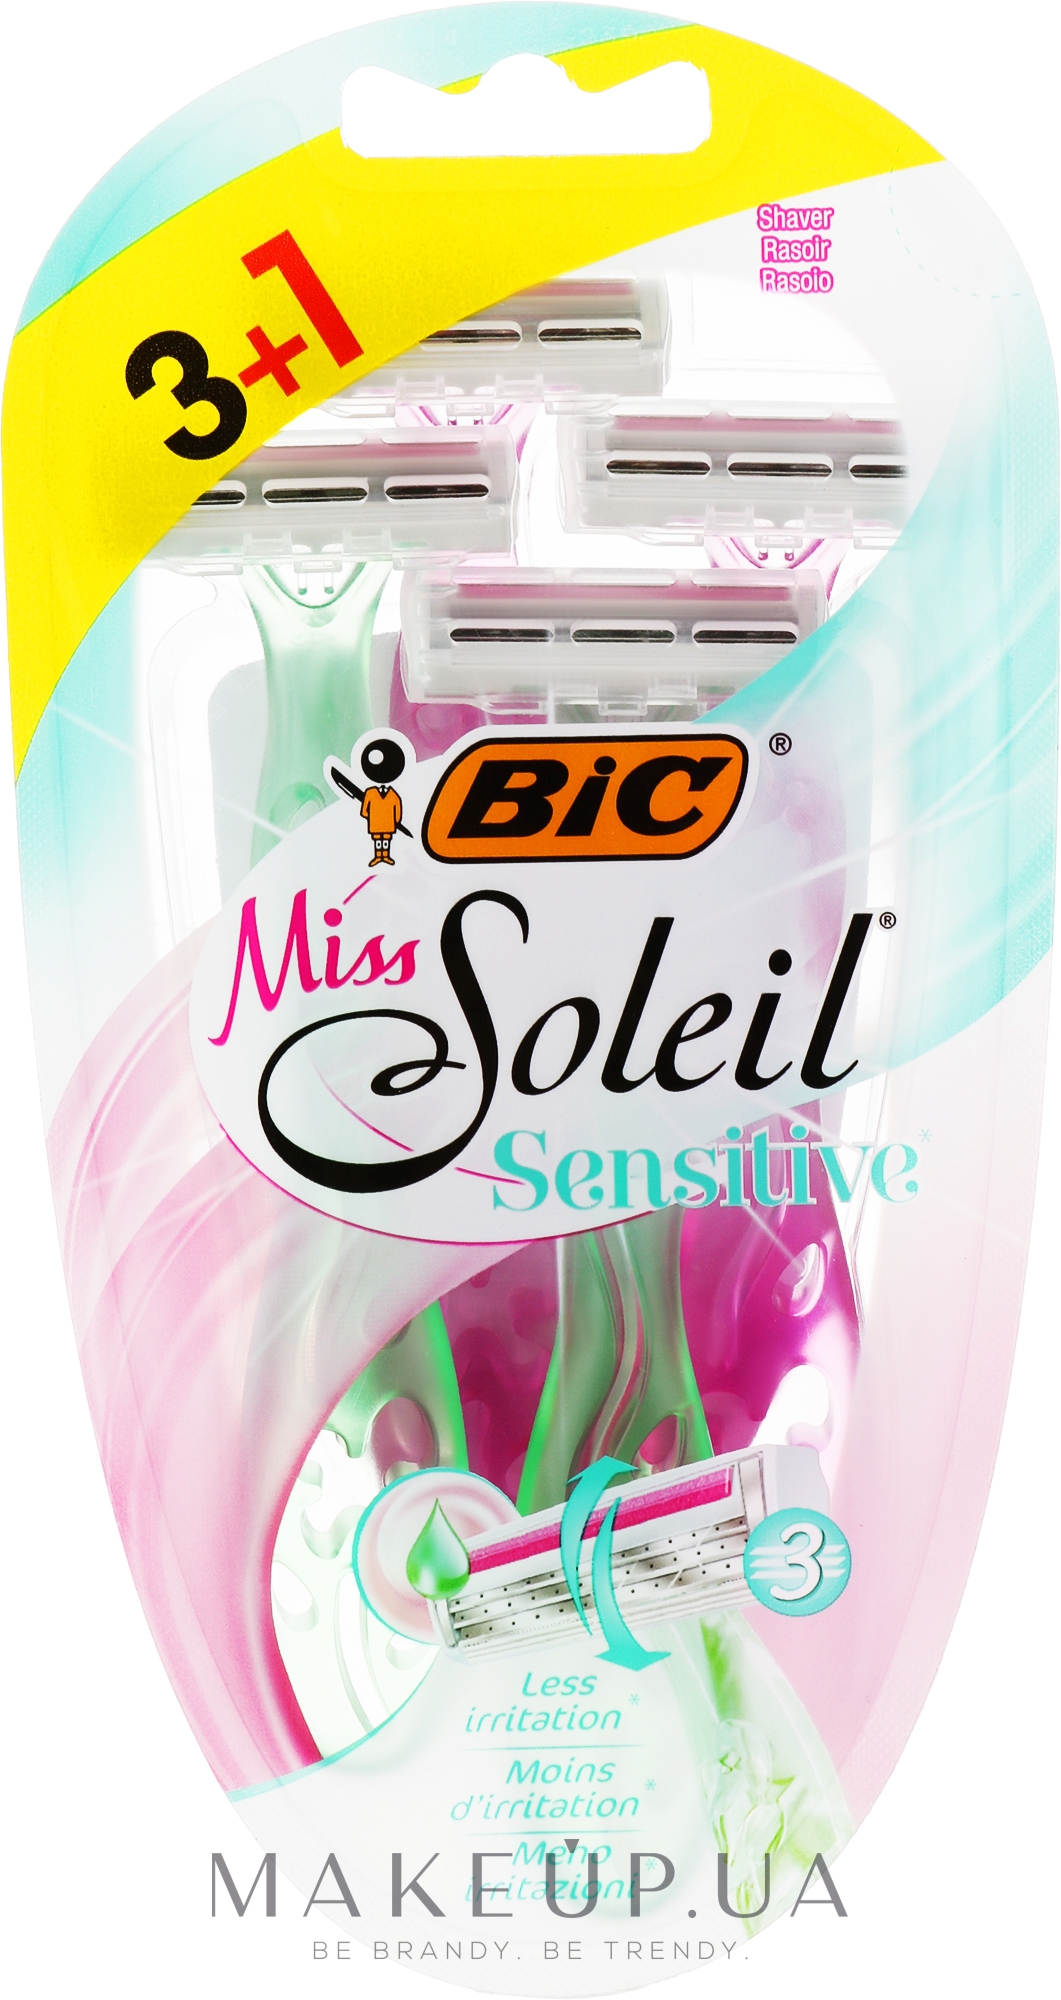 Жіночий одноразовий станок, 4 шт. - Bic Miss Soleil 3 Sensitive — фото 4шт